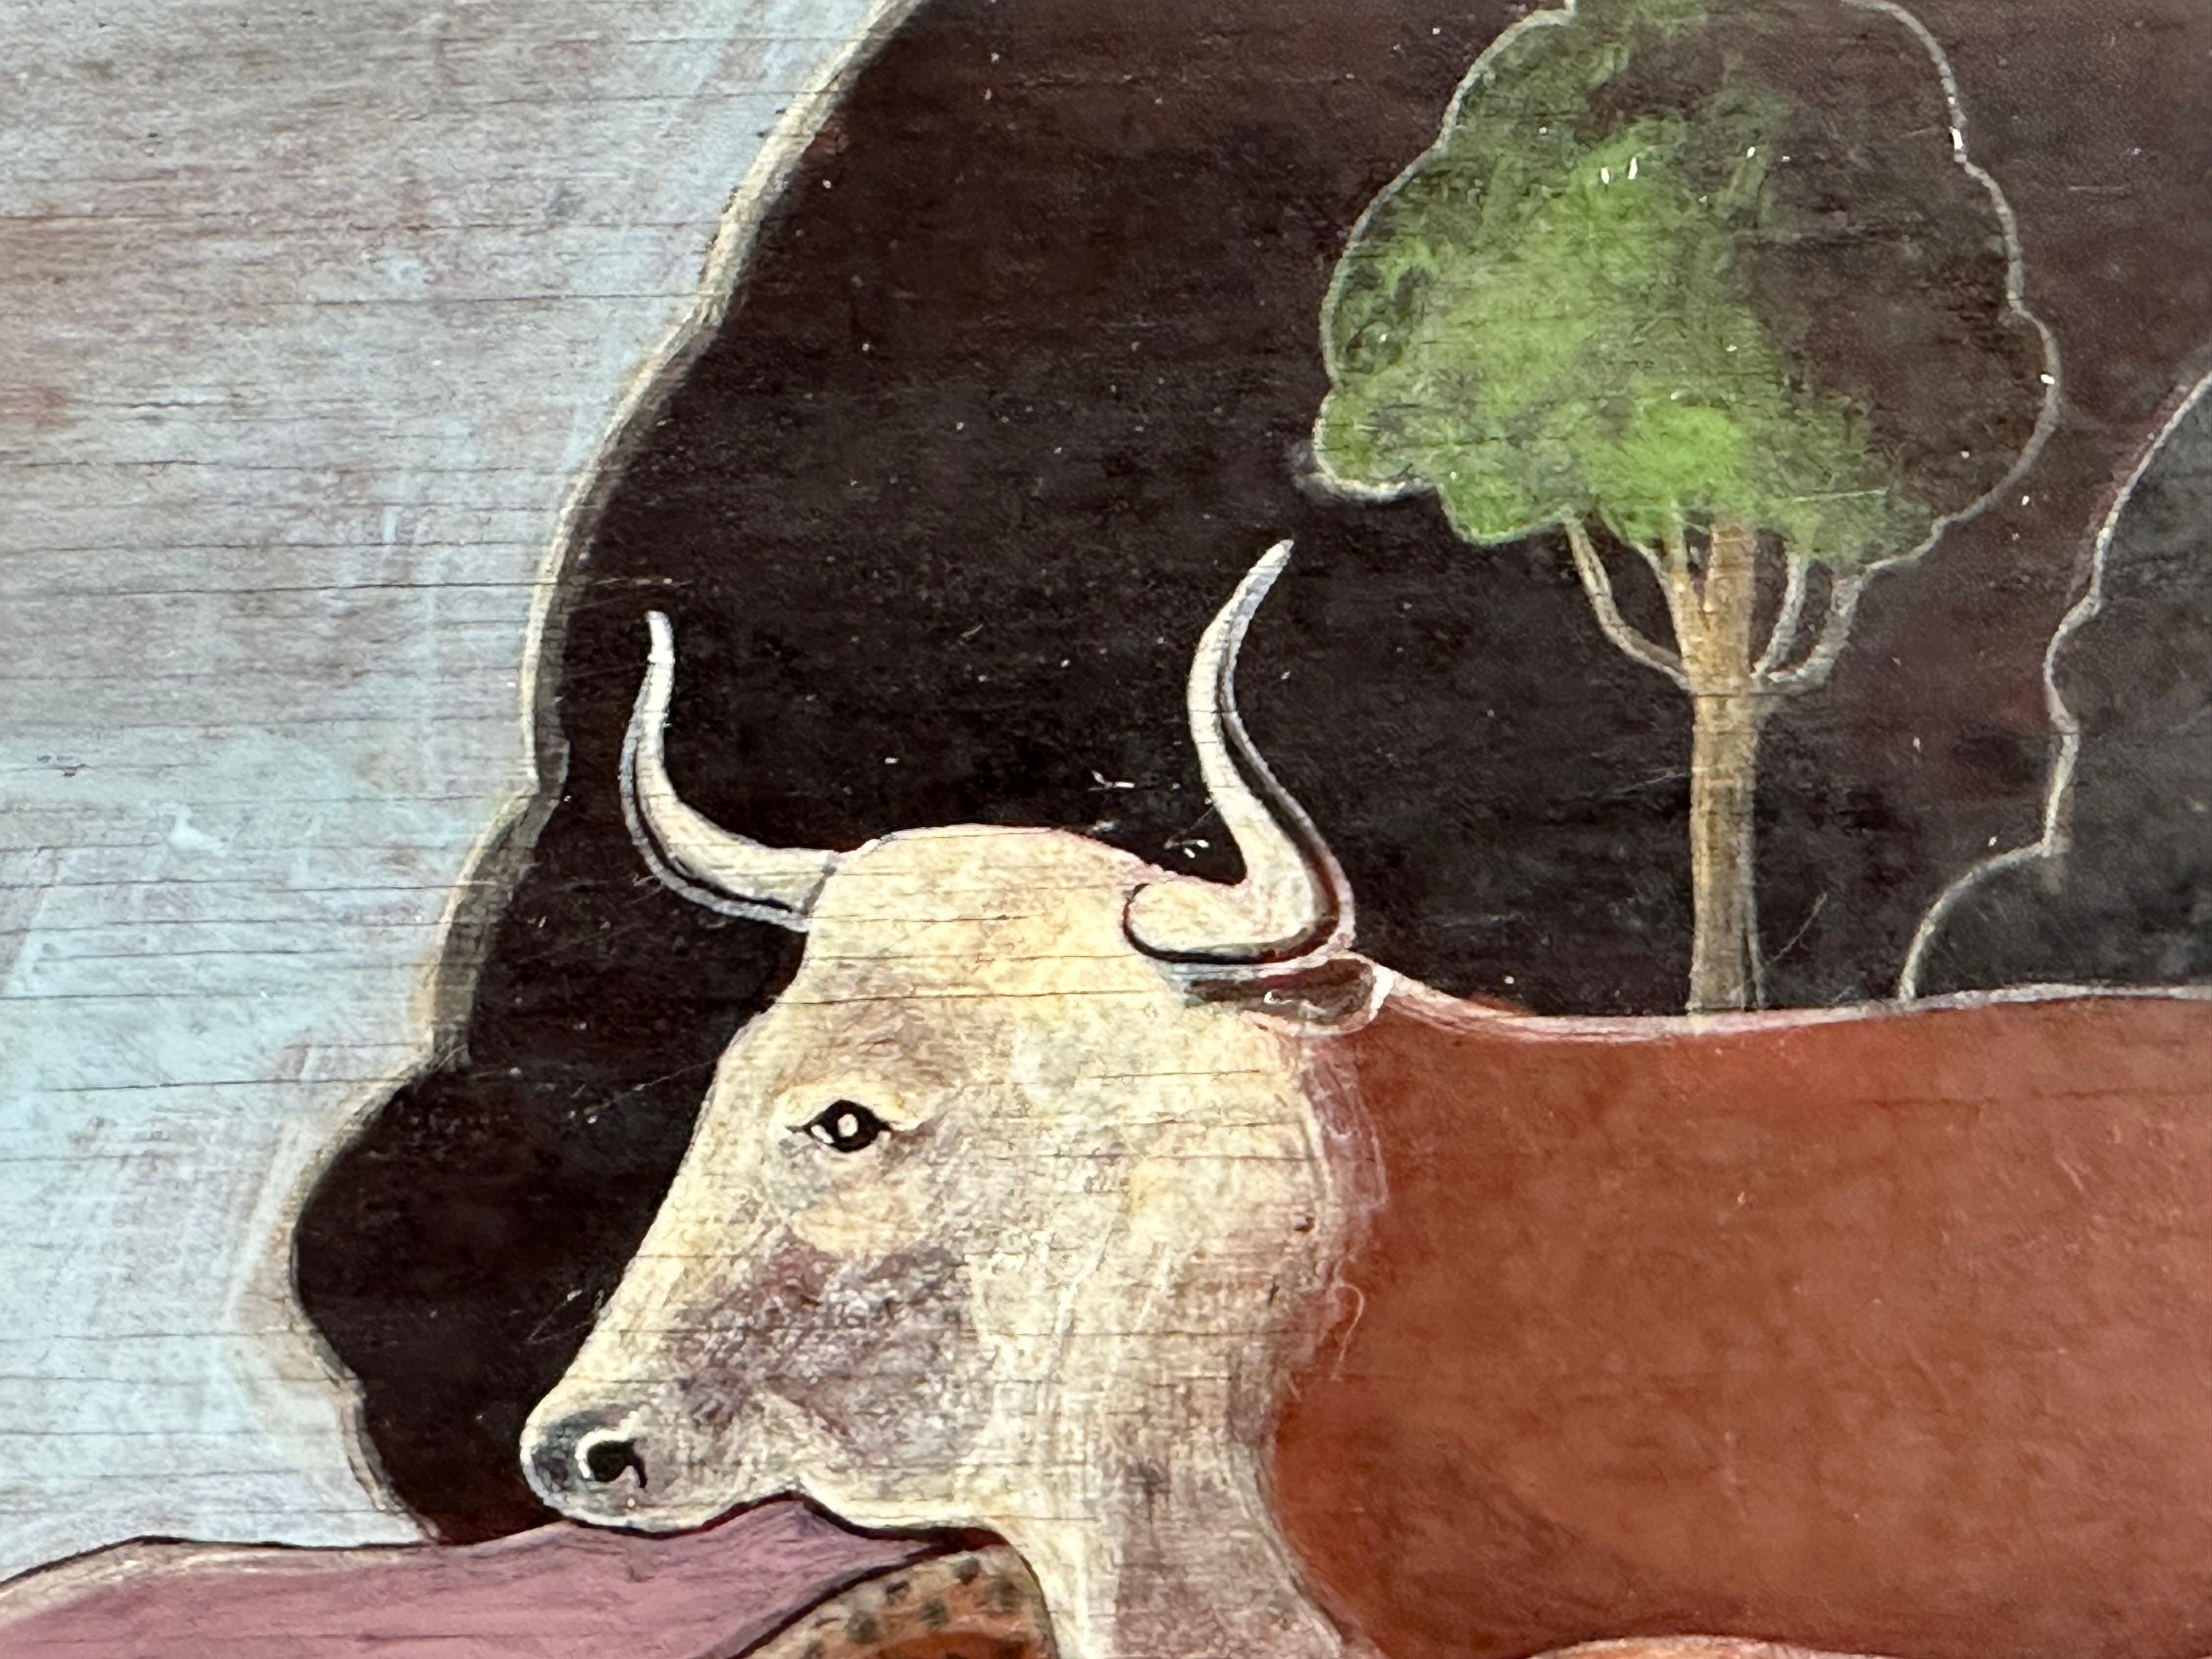 Surrealistisches Gemälde nach dem Gemälde von Edward Hicks, Peaceable Kingdom. Öl auf Holzplatte, 14 x 20 Zoll. Unterzeichnet Sovjani, 1970. 

Das Bemerkenswerteste an dem Bild ist das Erscheinen eines Boston Terriers in der Mitte. 